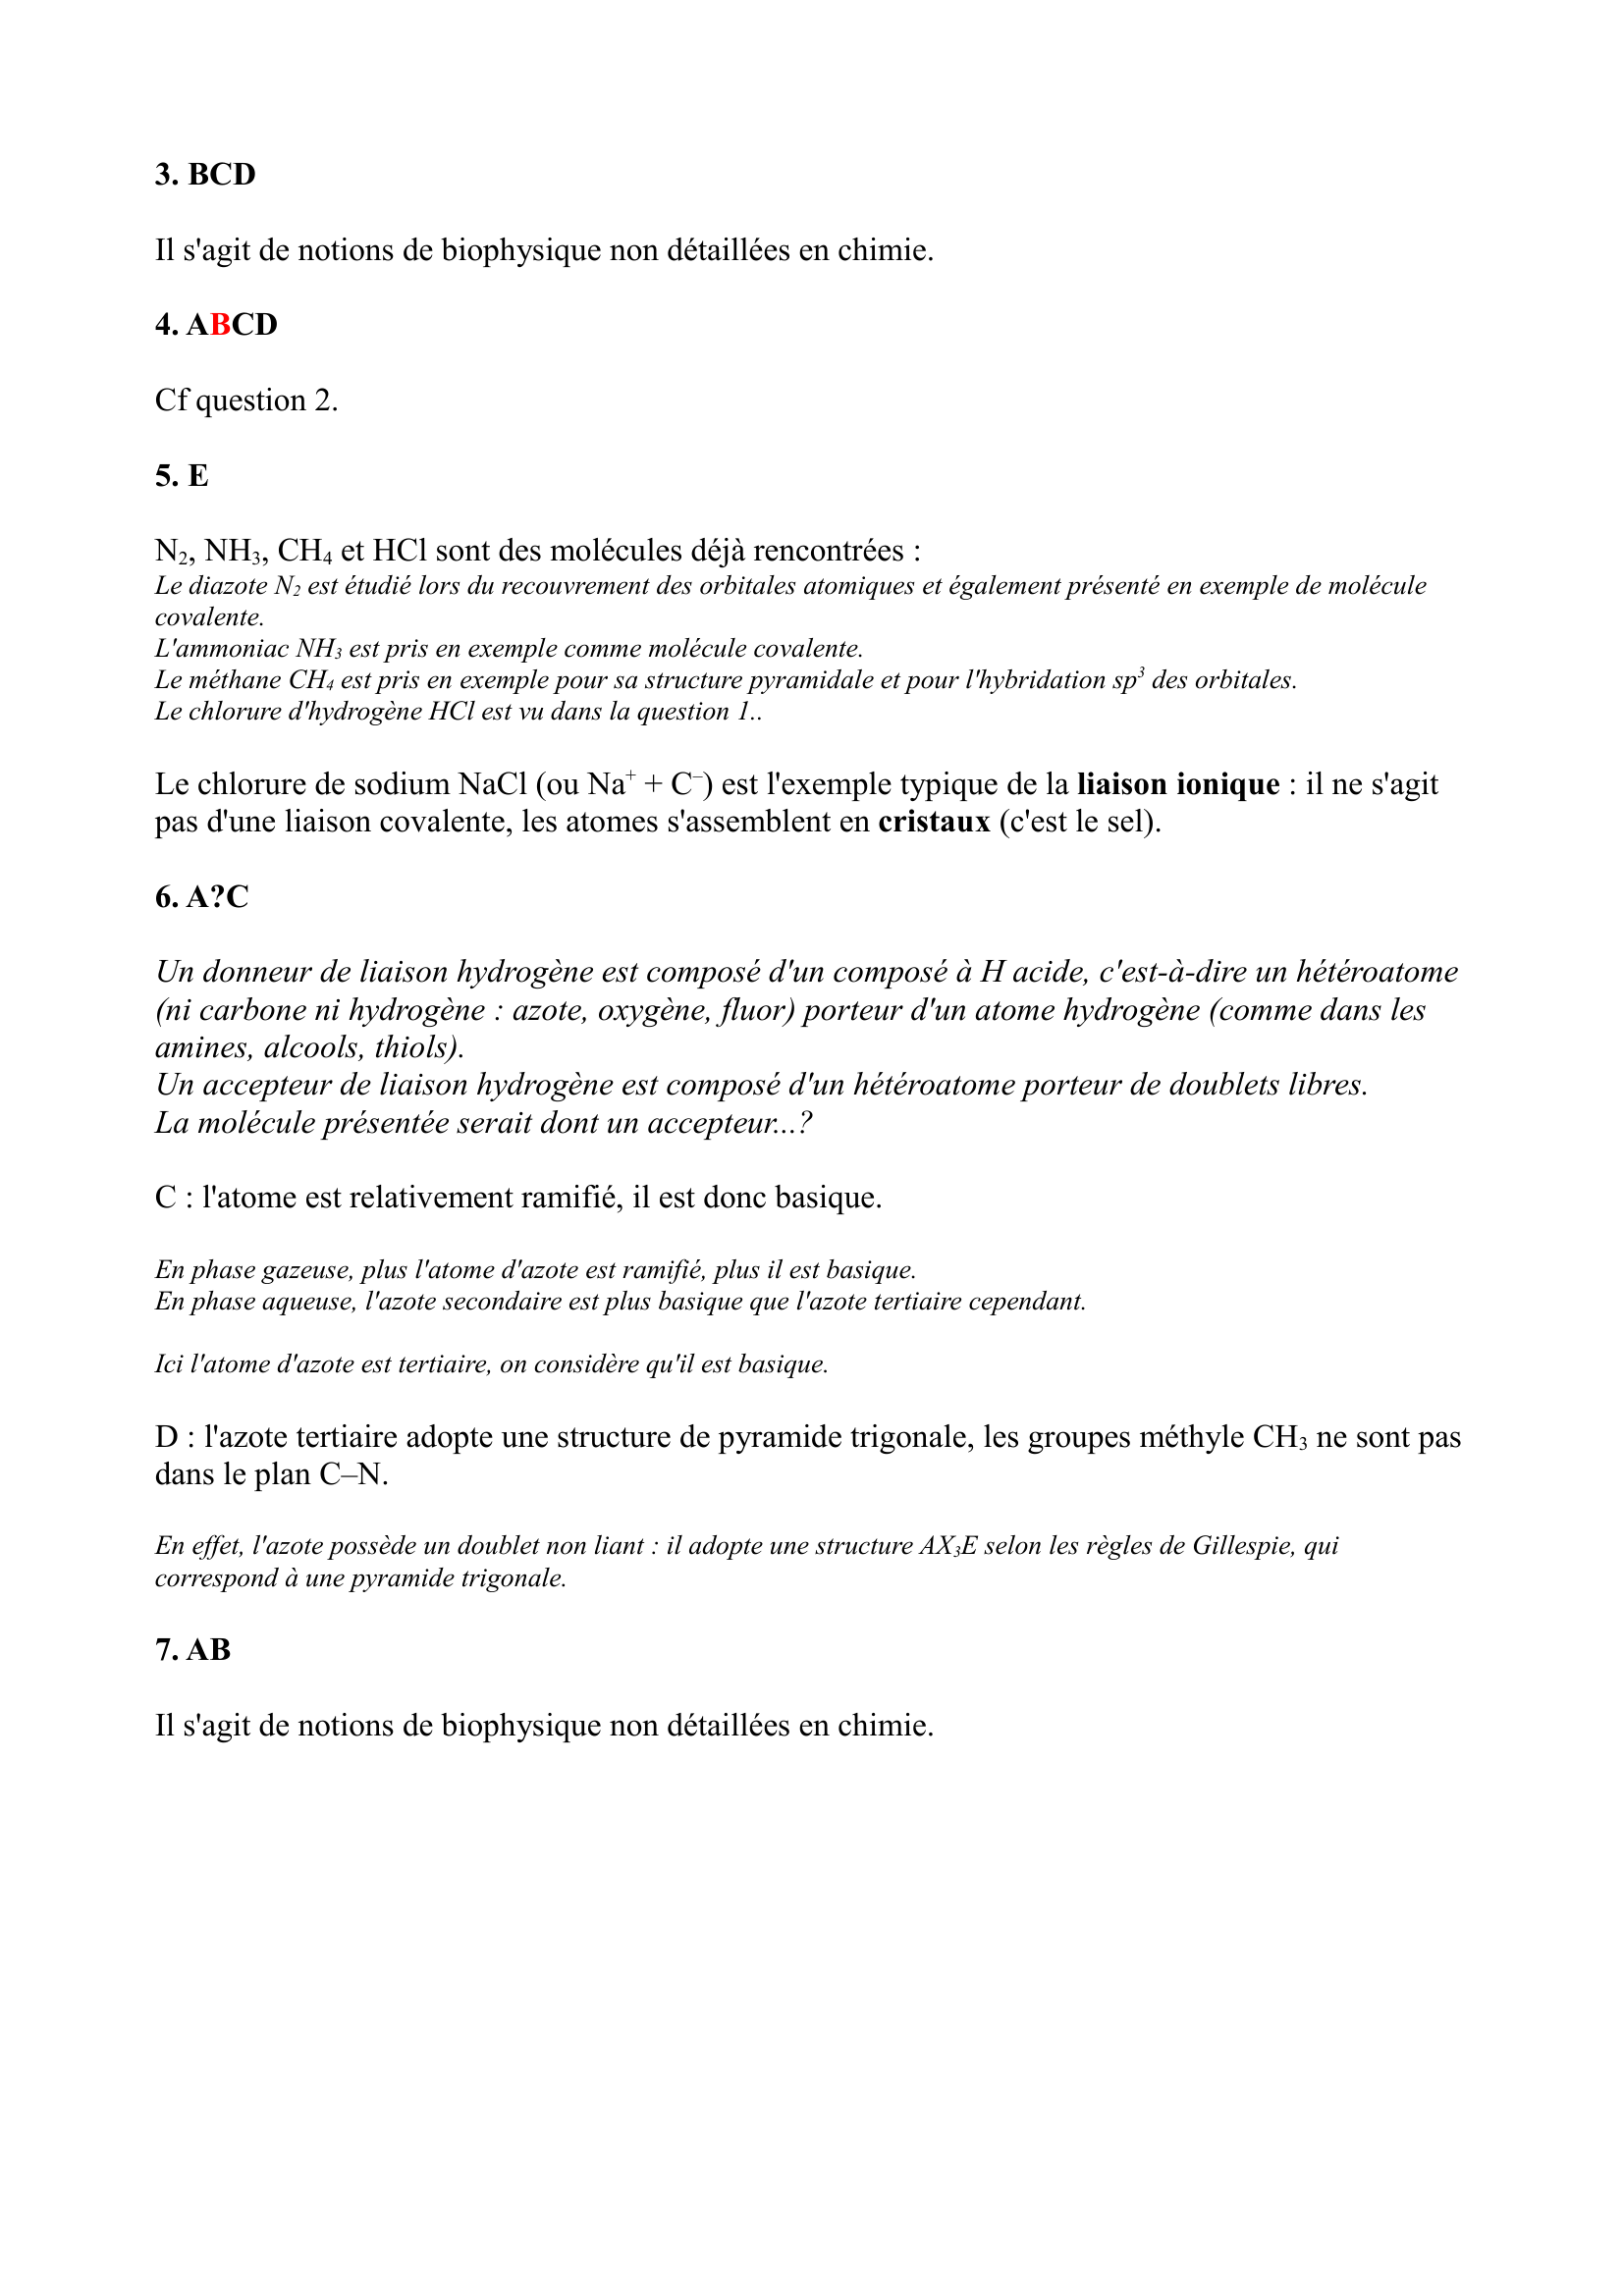 Prévisualisation du document Correction détaillée de chimie
I Généralités
1.